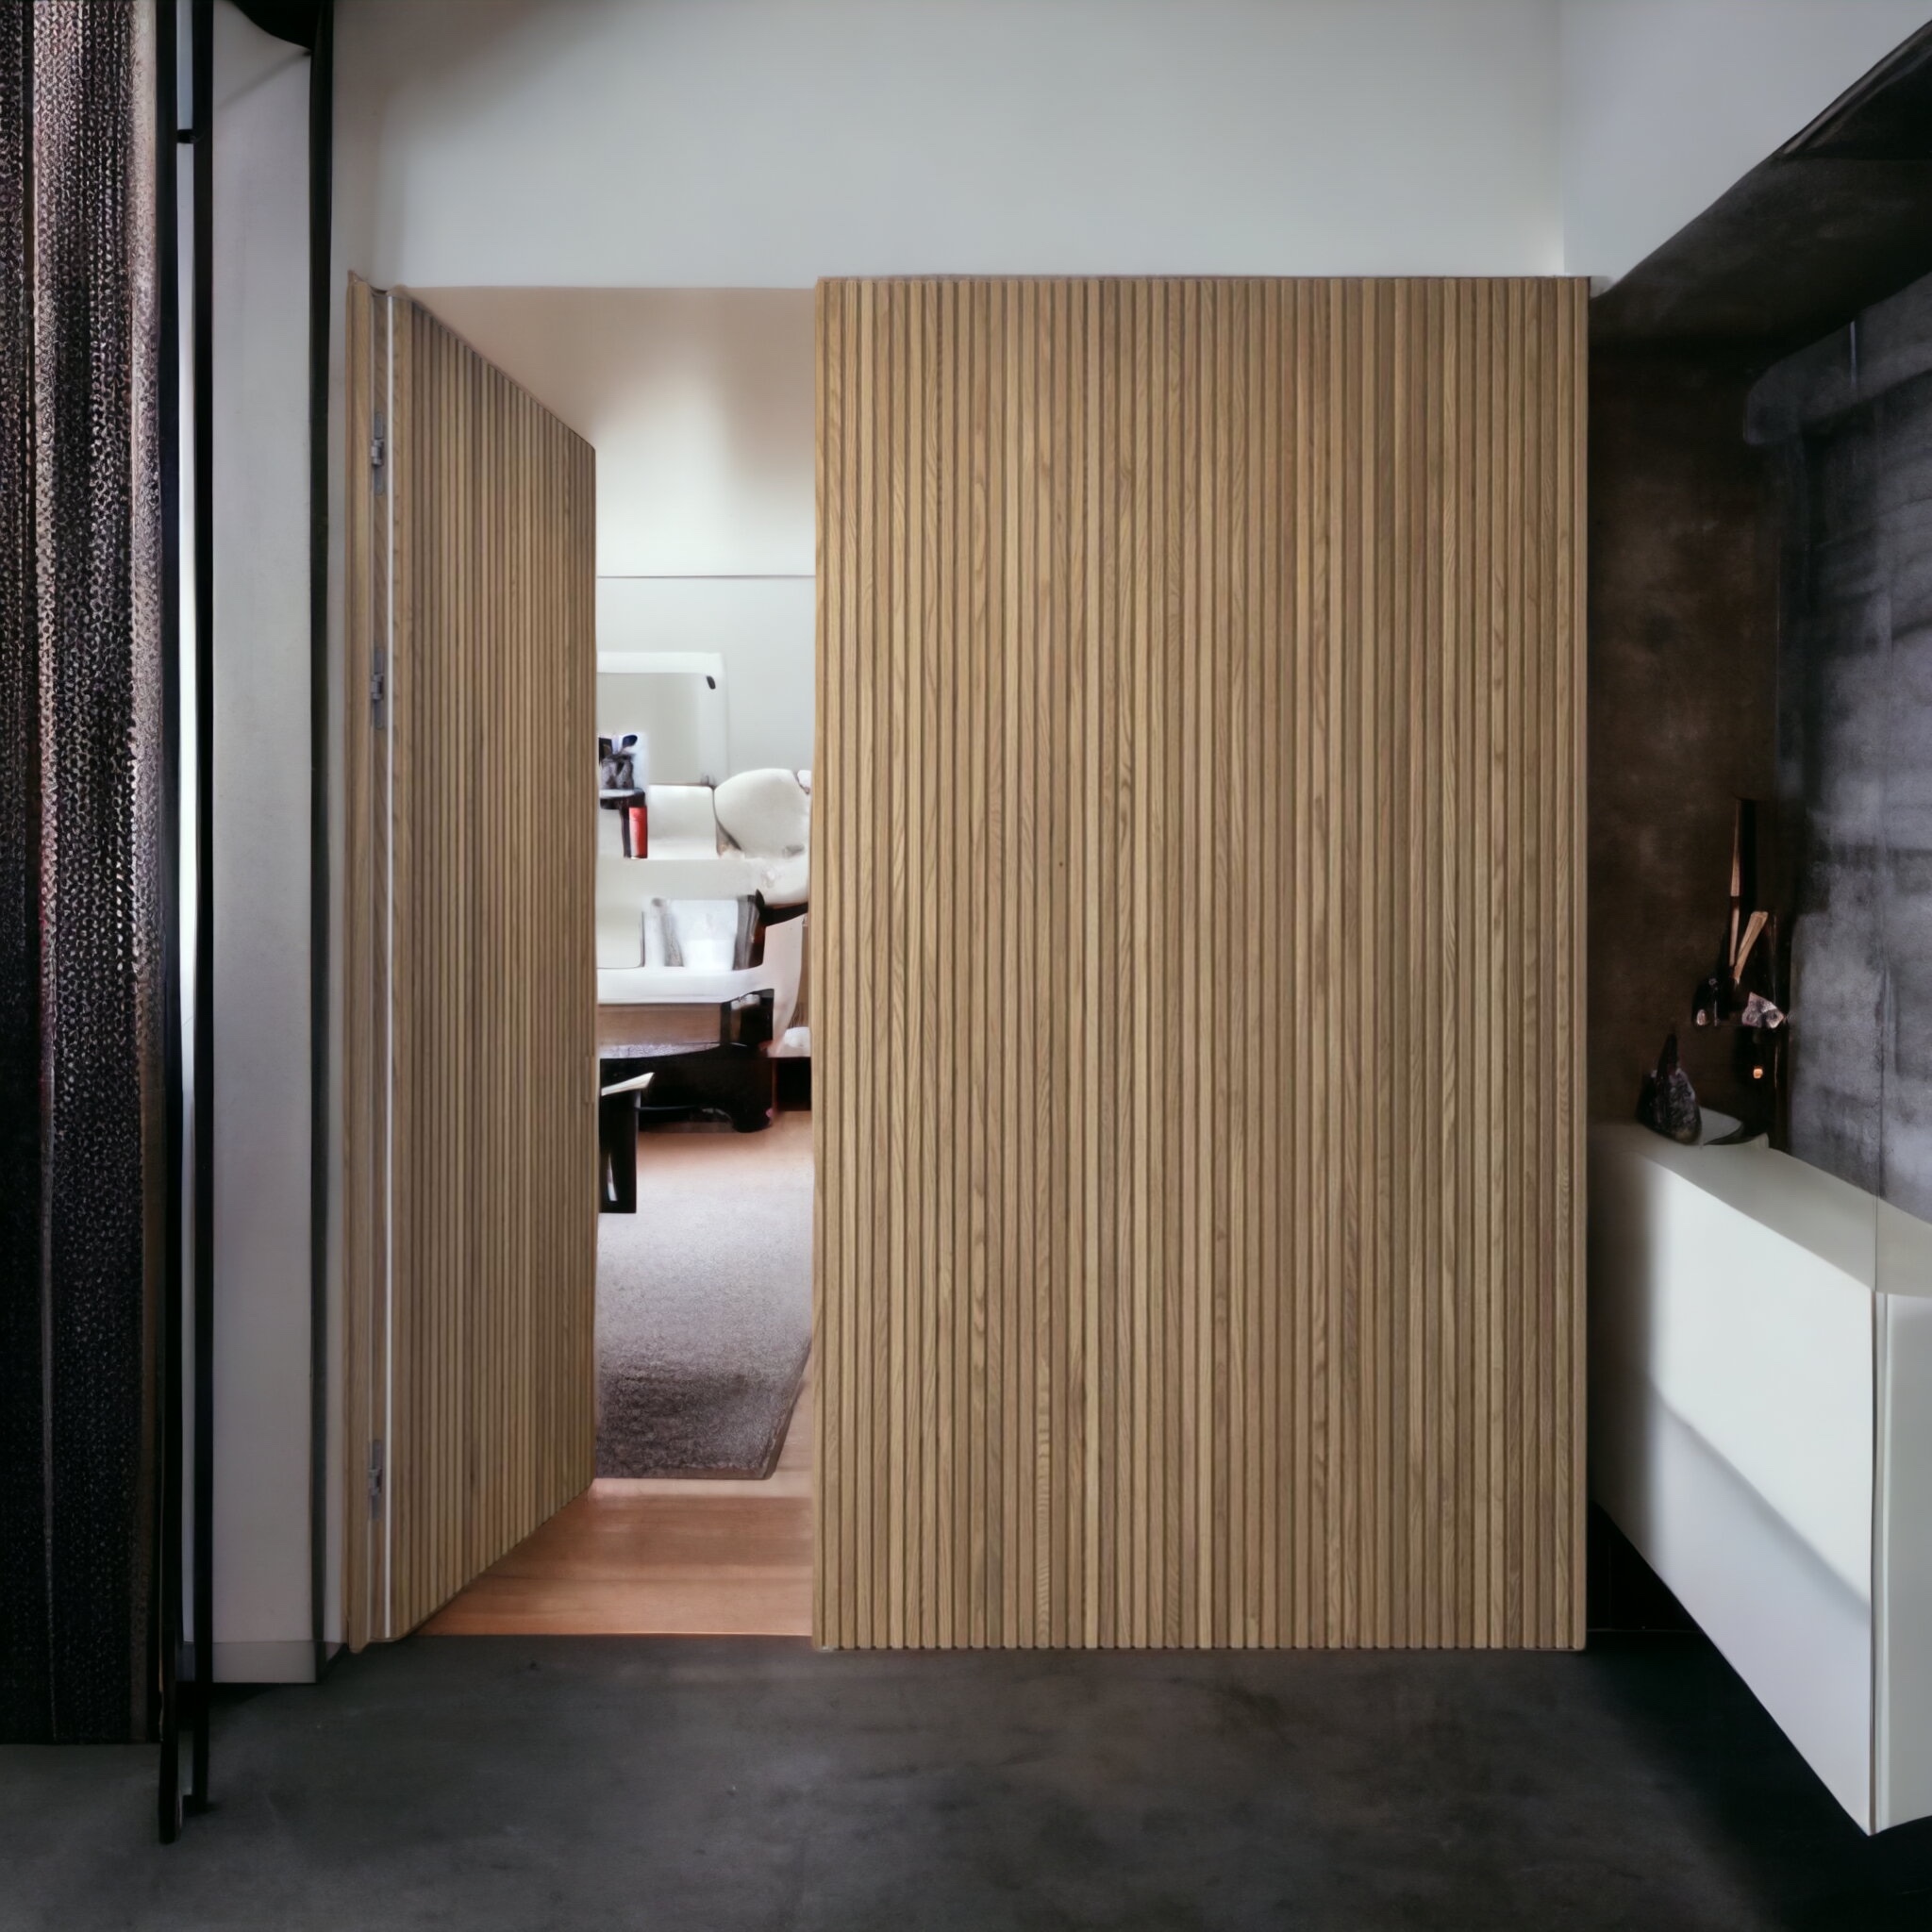 Parete divisoria muratura prefabbricata con porta scomparsa e rivestimento  in listelli di legno versione completa - XLAB Design